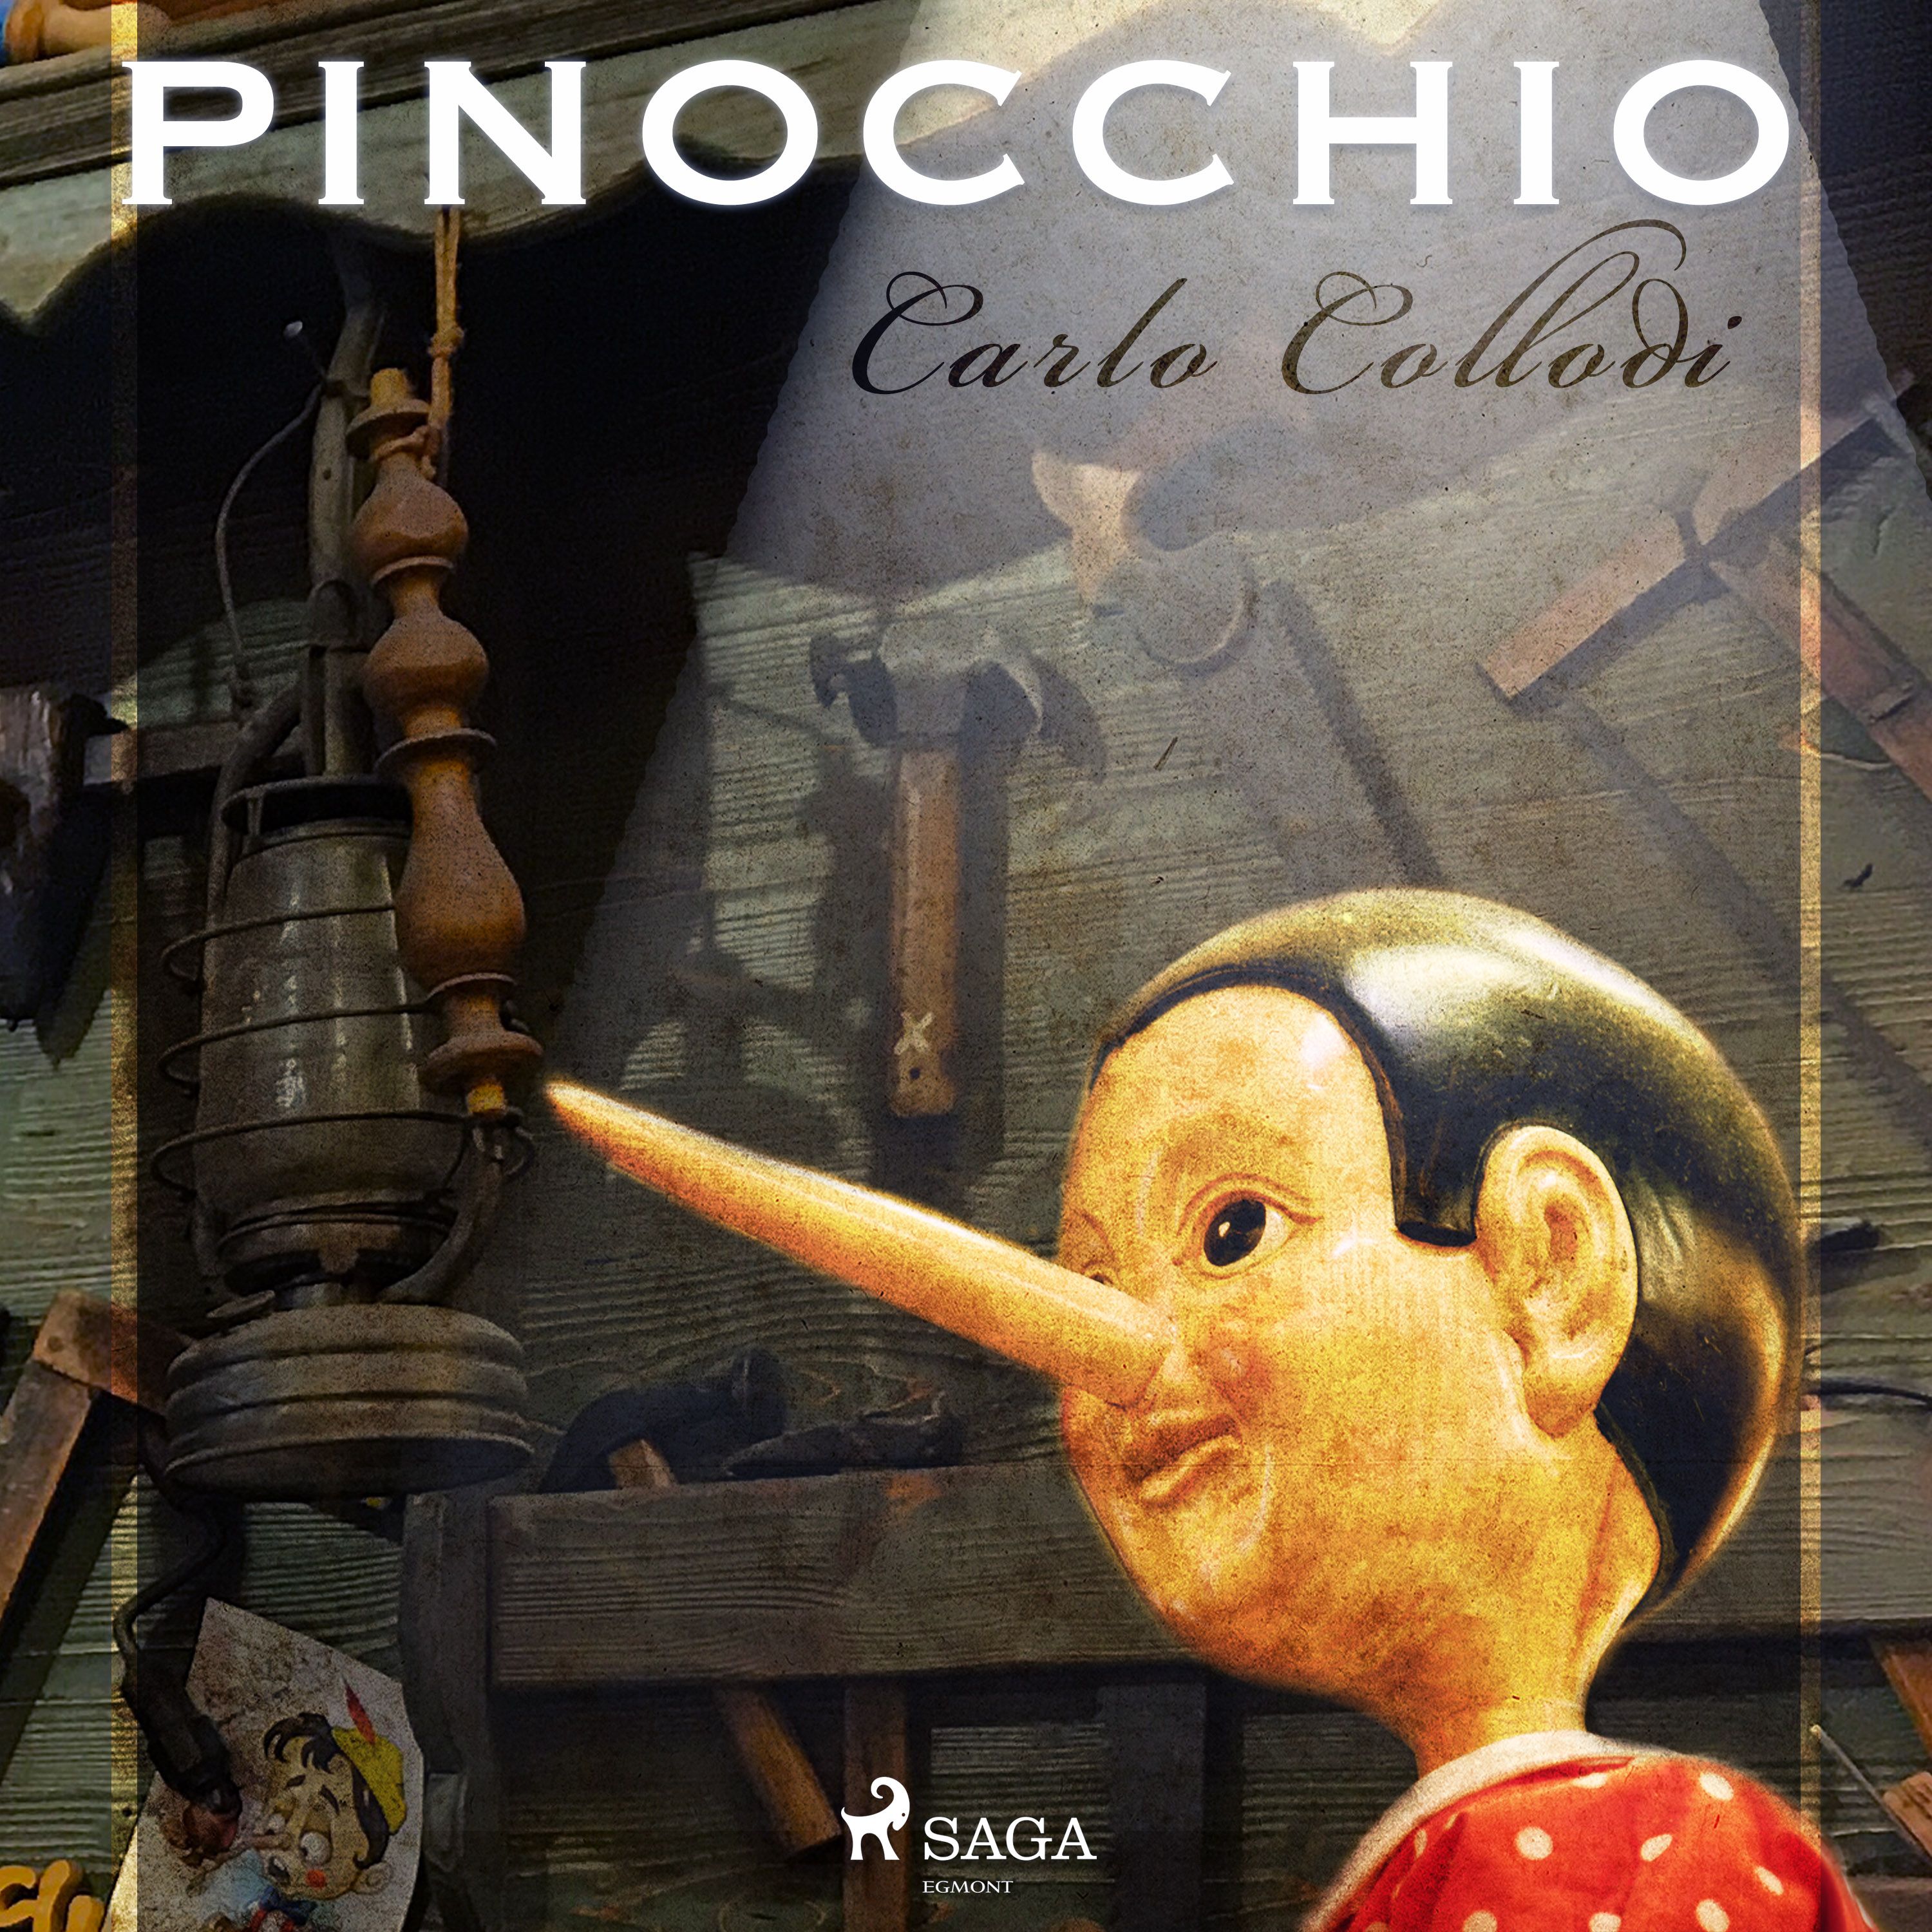 Pinocchio, audiobook by Carlo Collodi